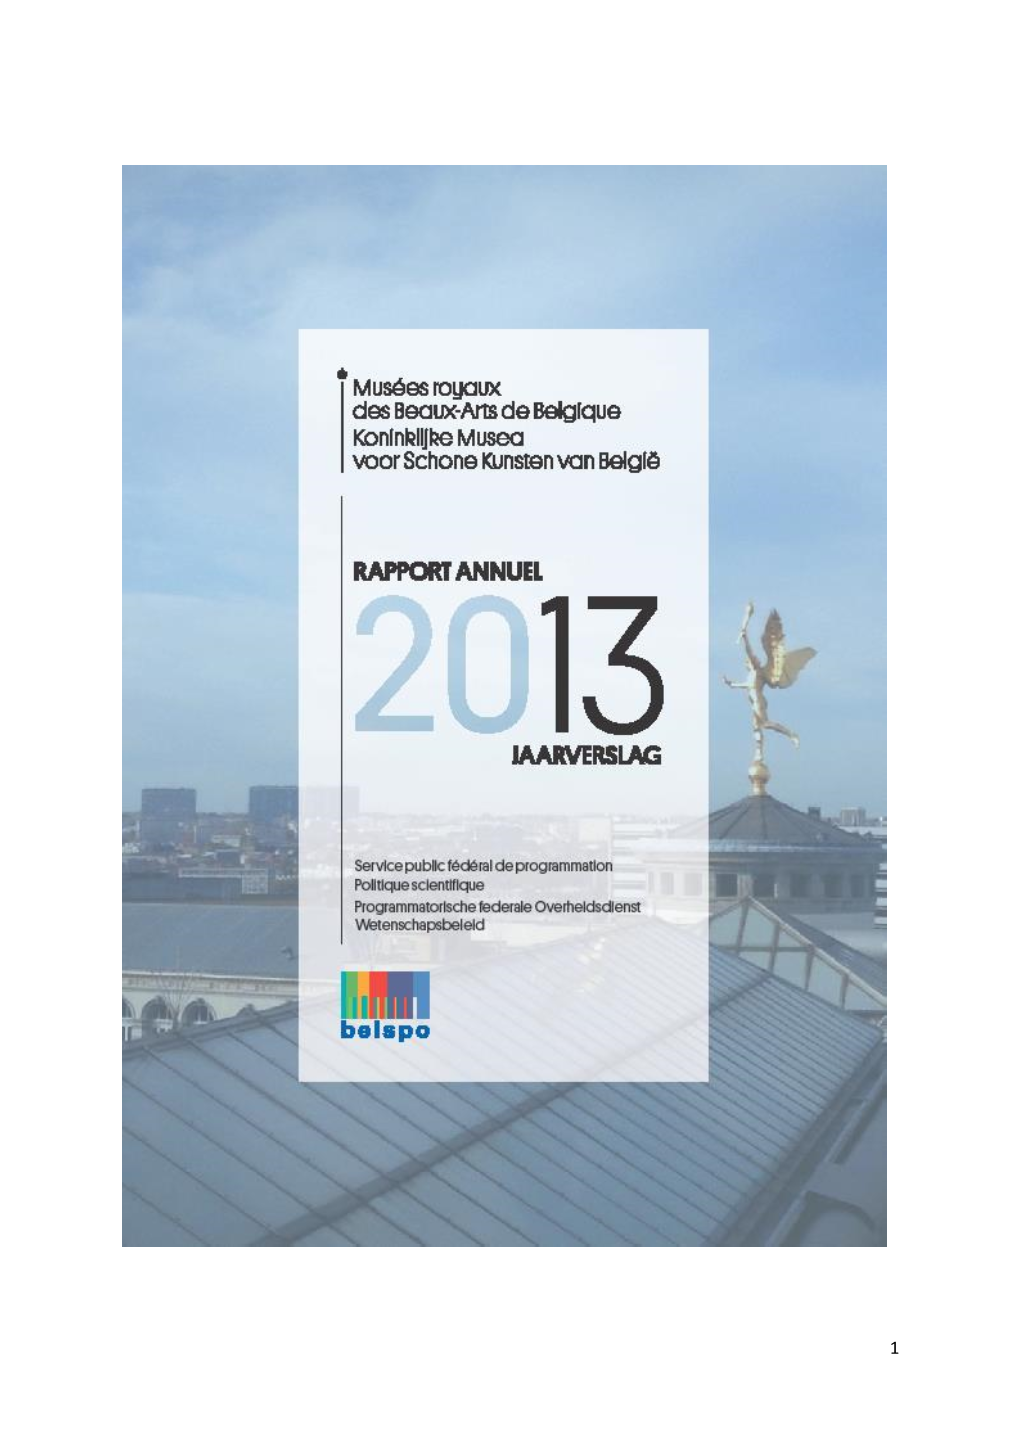 Jaarverslag 2013, IDEWE, Externe Dienst Voor Preventie En Bescherming Op Het Werk Vzw